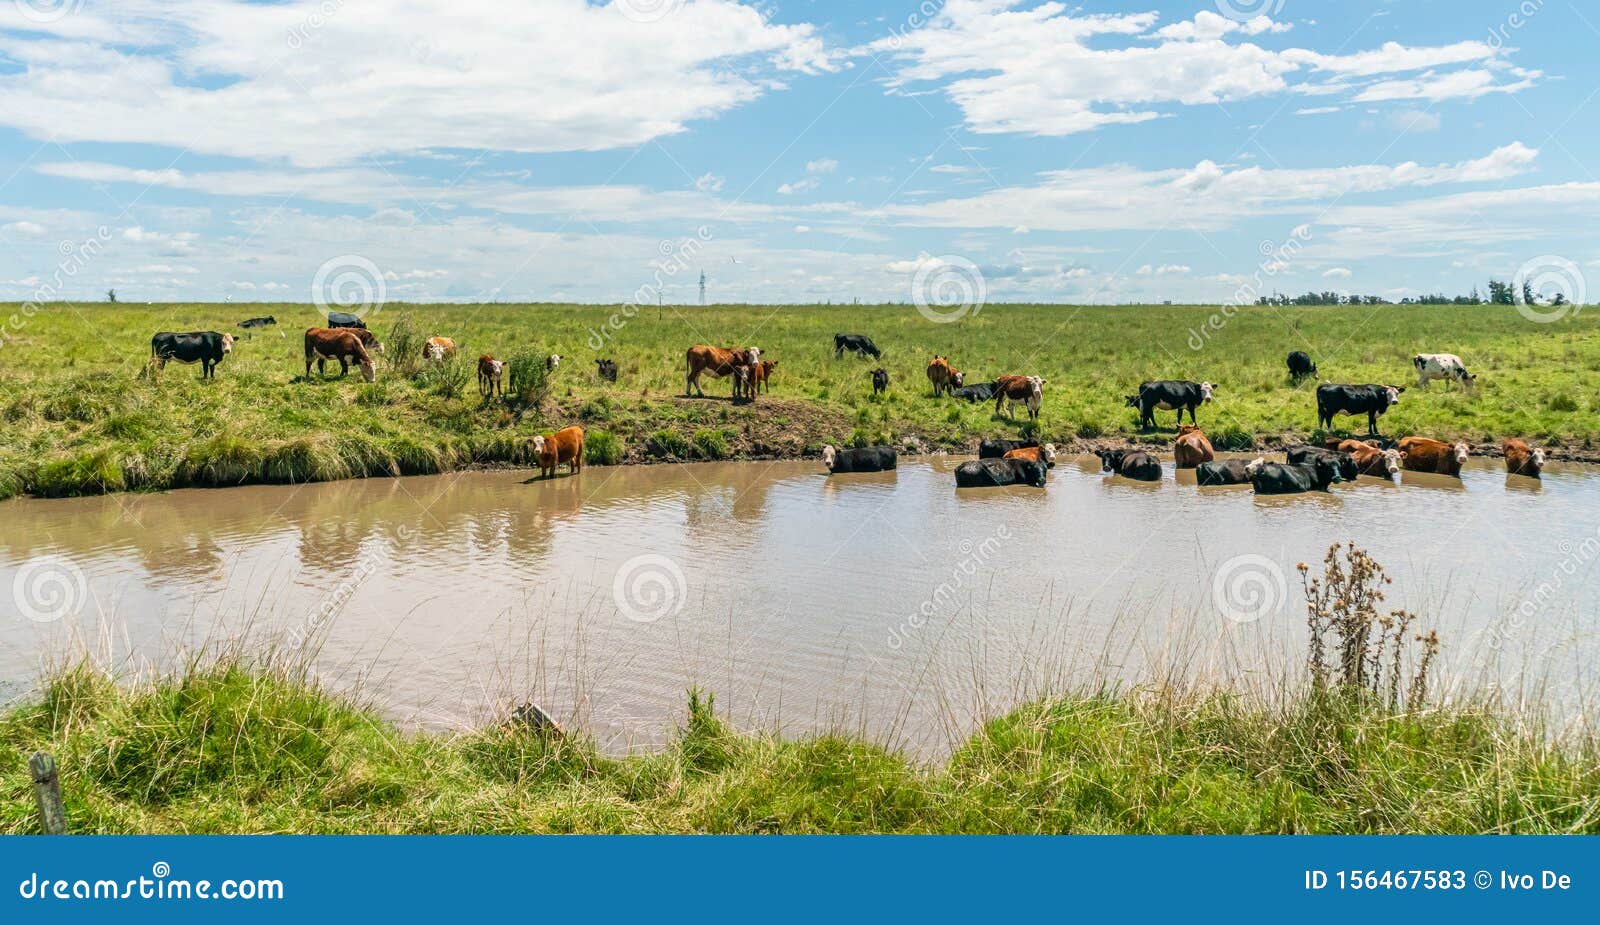 cows in uruguay